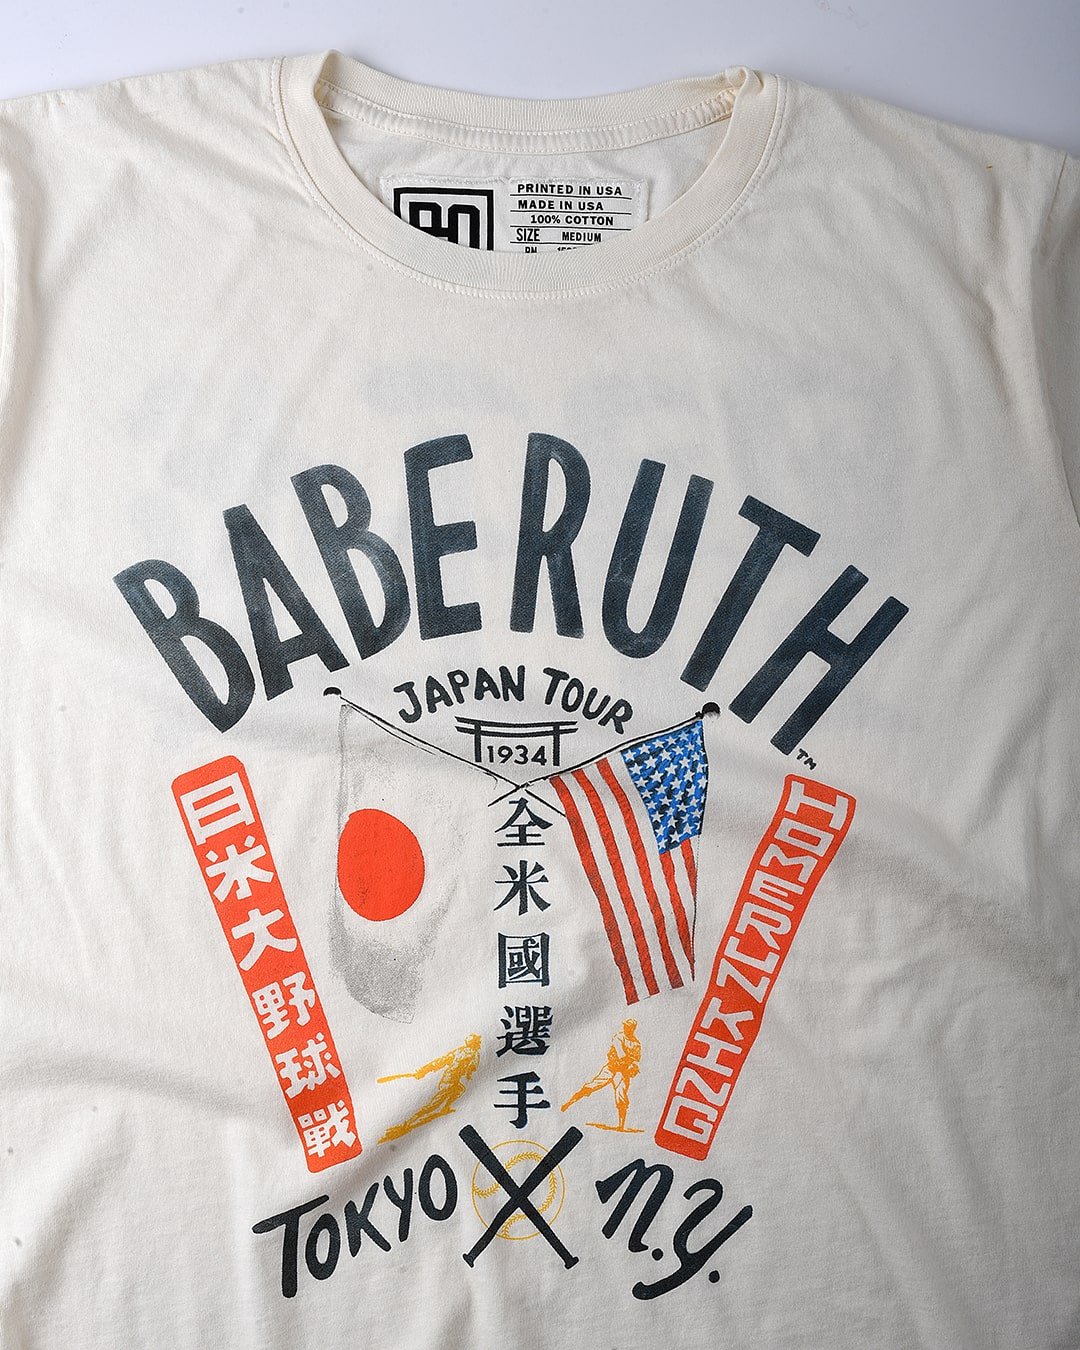 Babe Ruth Tokyo x NY Vintage White Tee 3XL / Vintage White